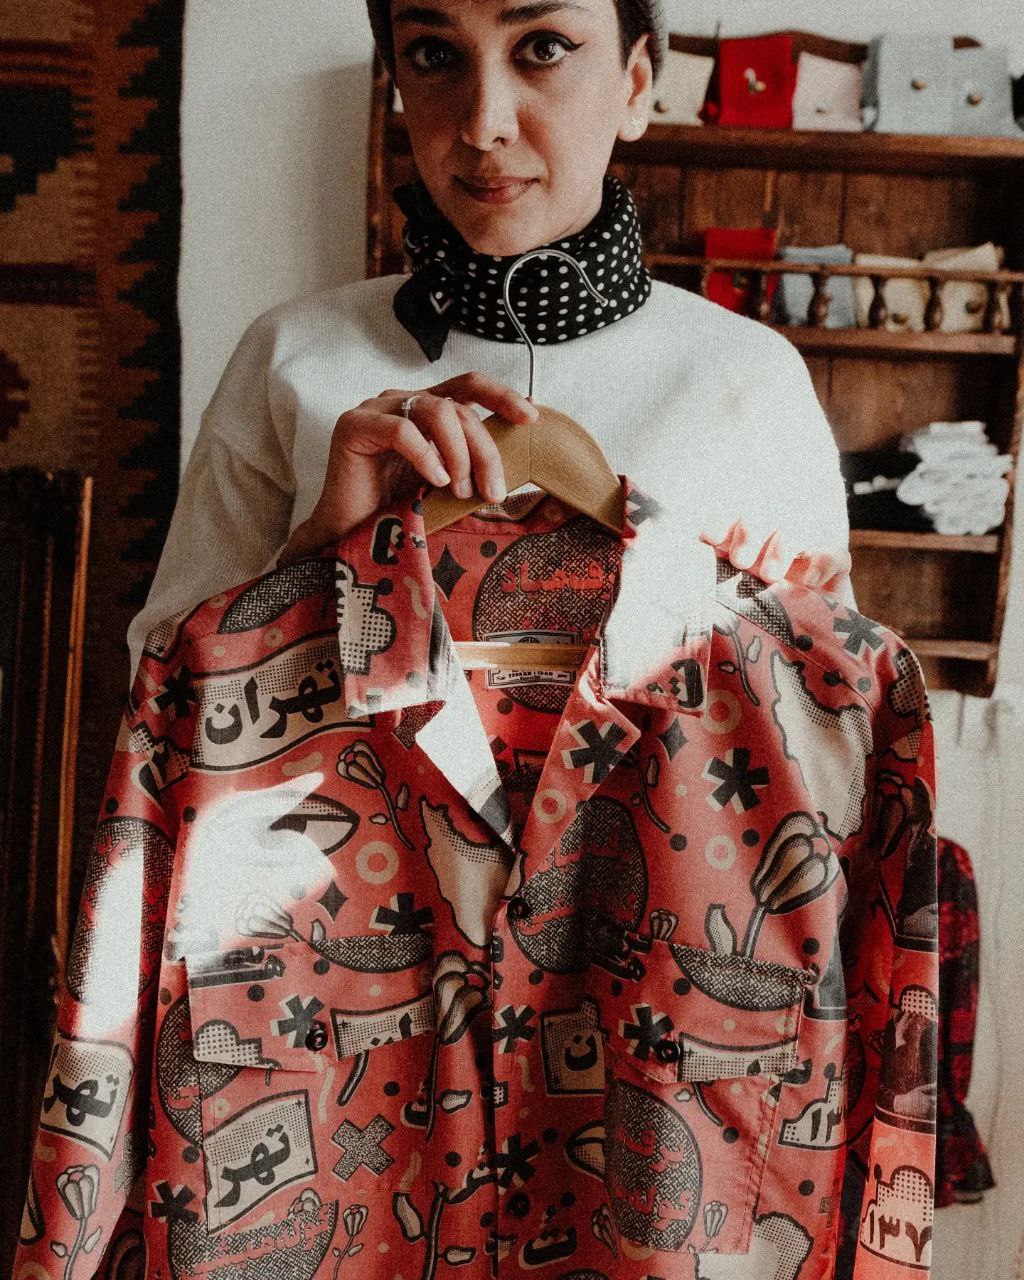 پیراهن های وینتیج: یک سبک کلاسیک با تاریخچه ای غنی